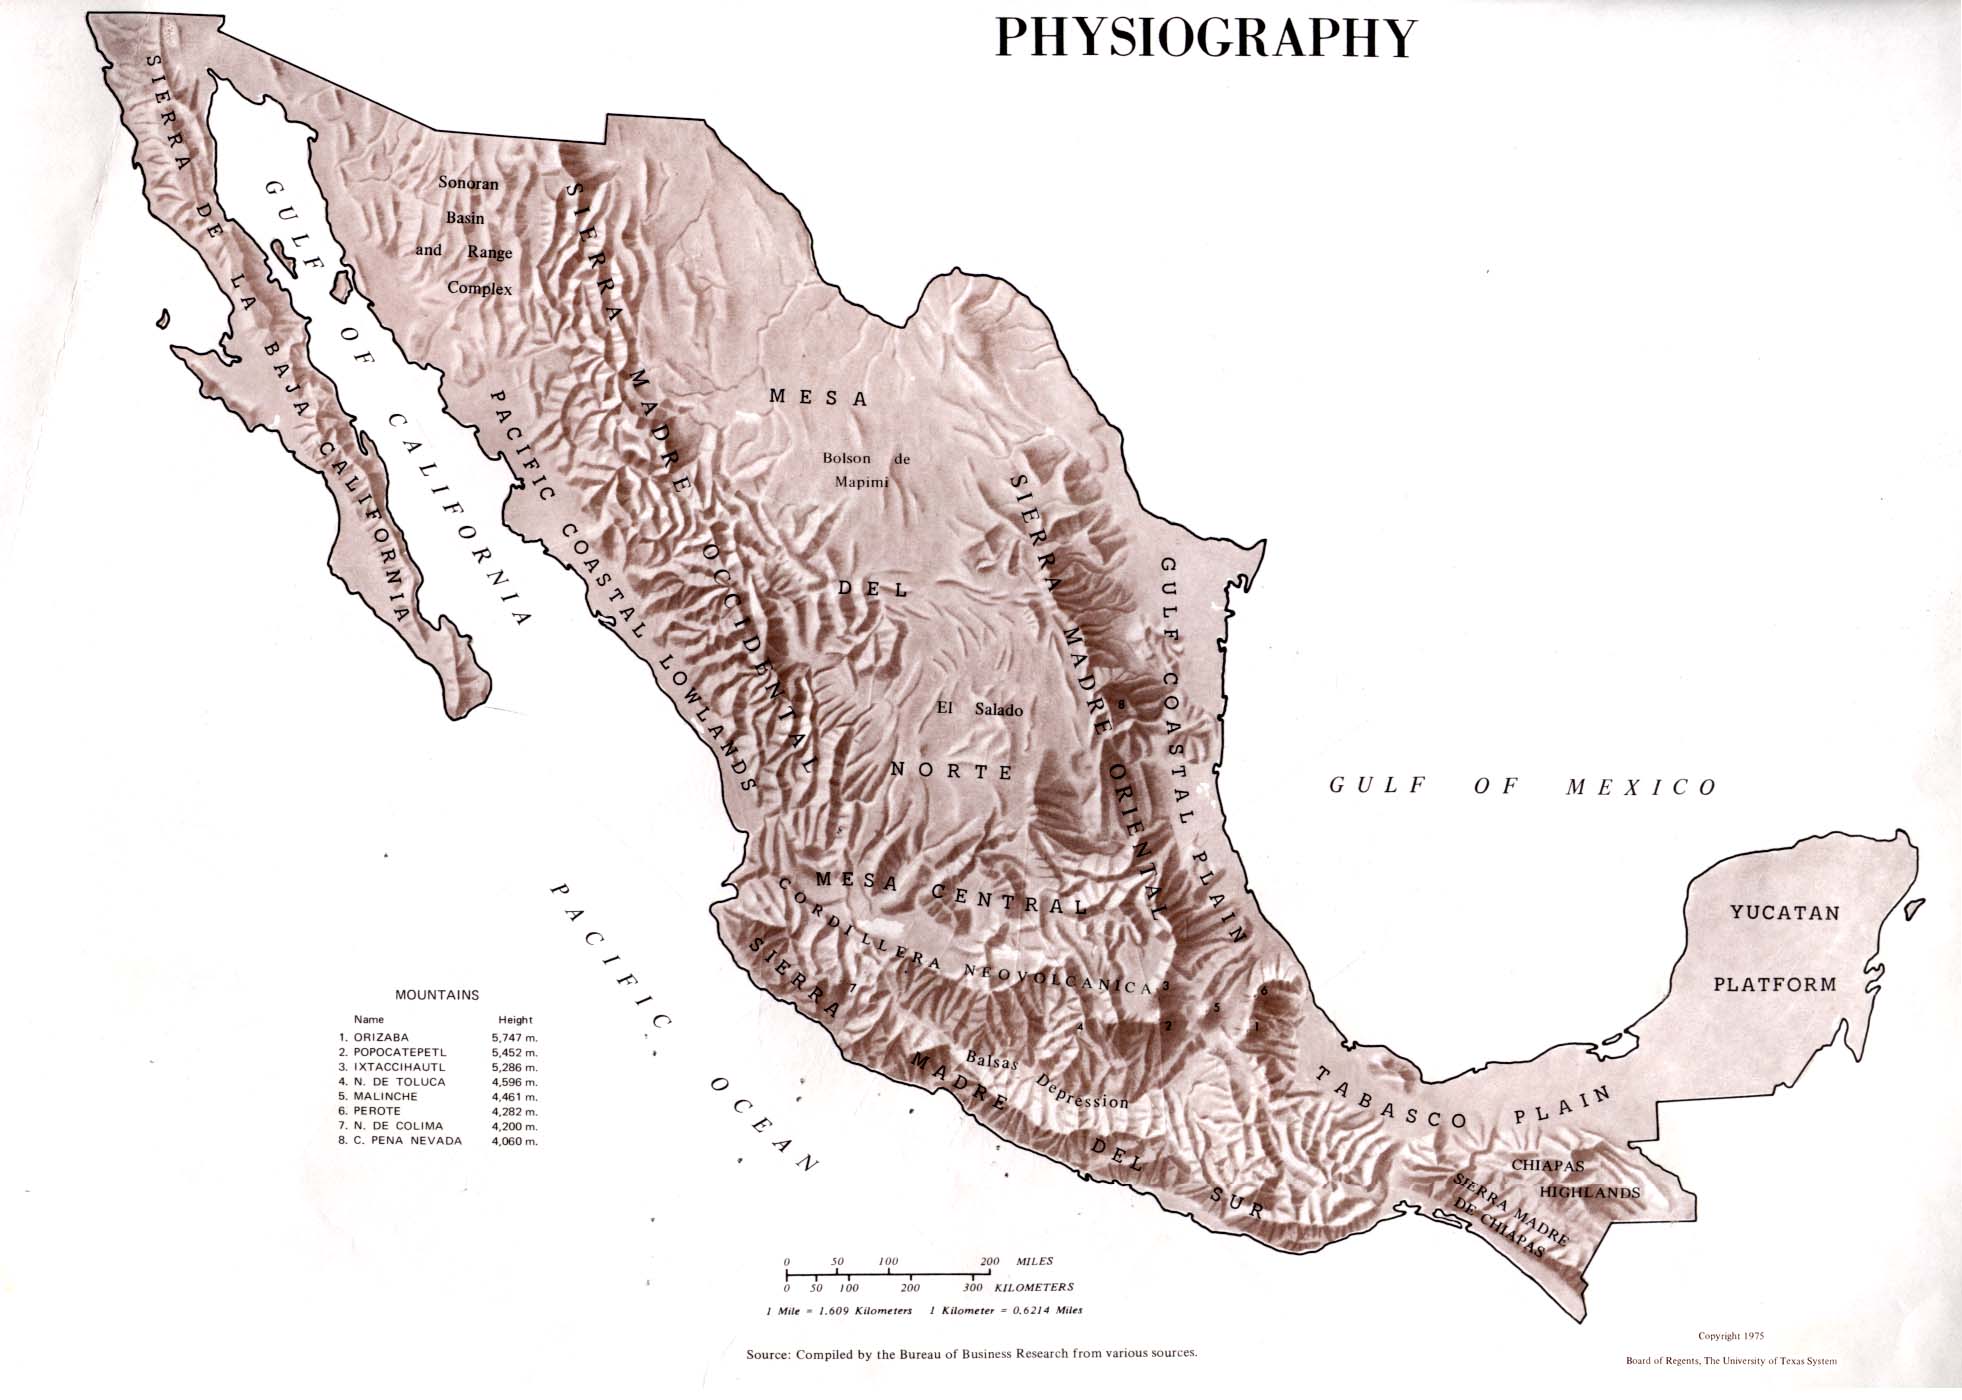 Mapa de la Fisiografía de México